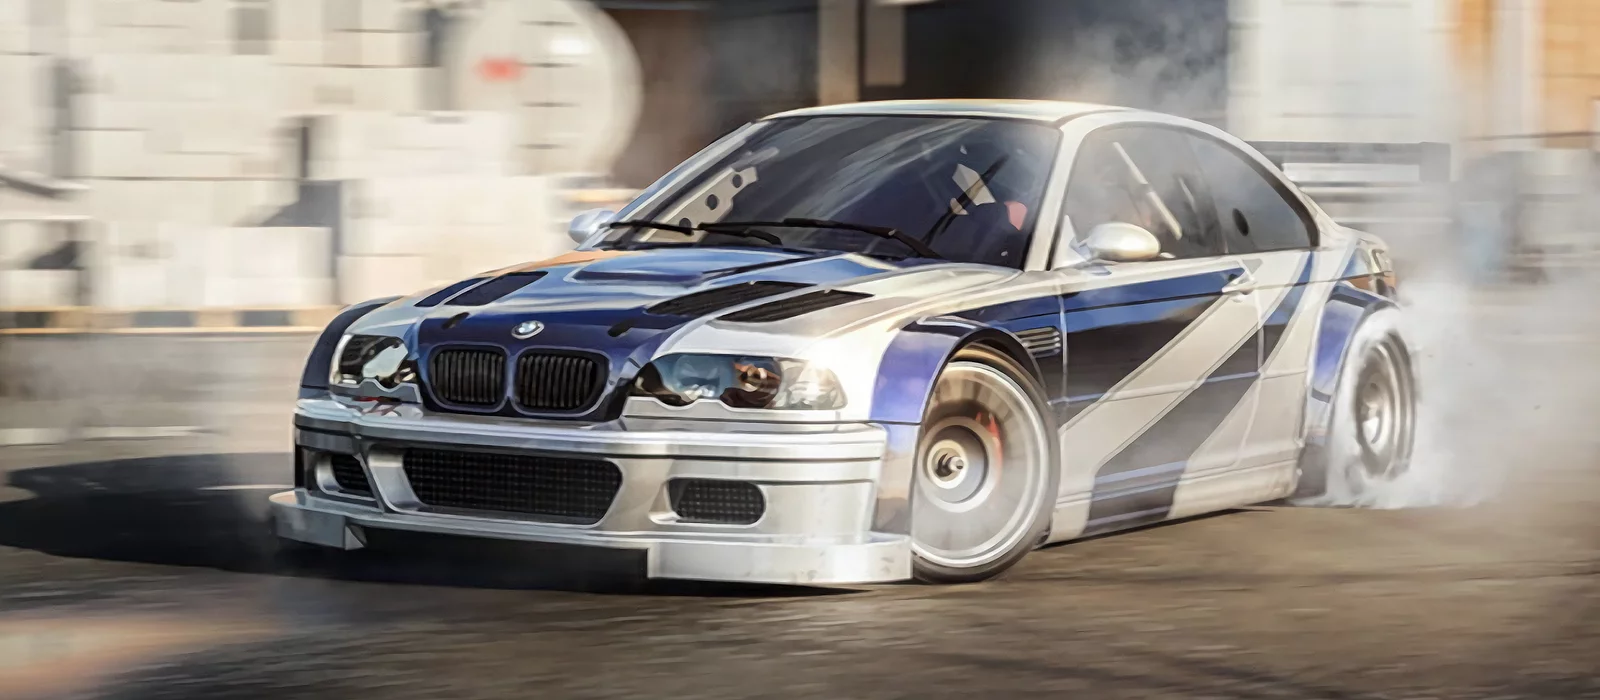 
          В сети показали, как новая версия мобильной Need for Speed с открытым миром выглядит с максимальной графикой
        